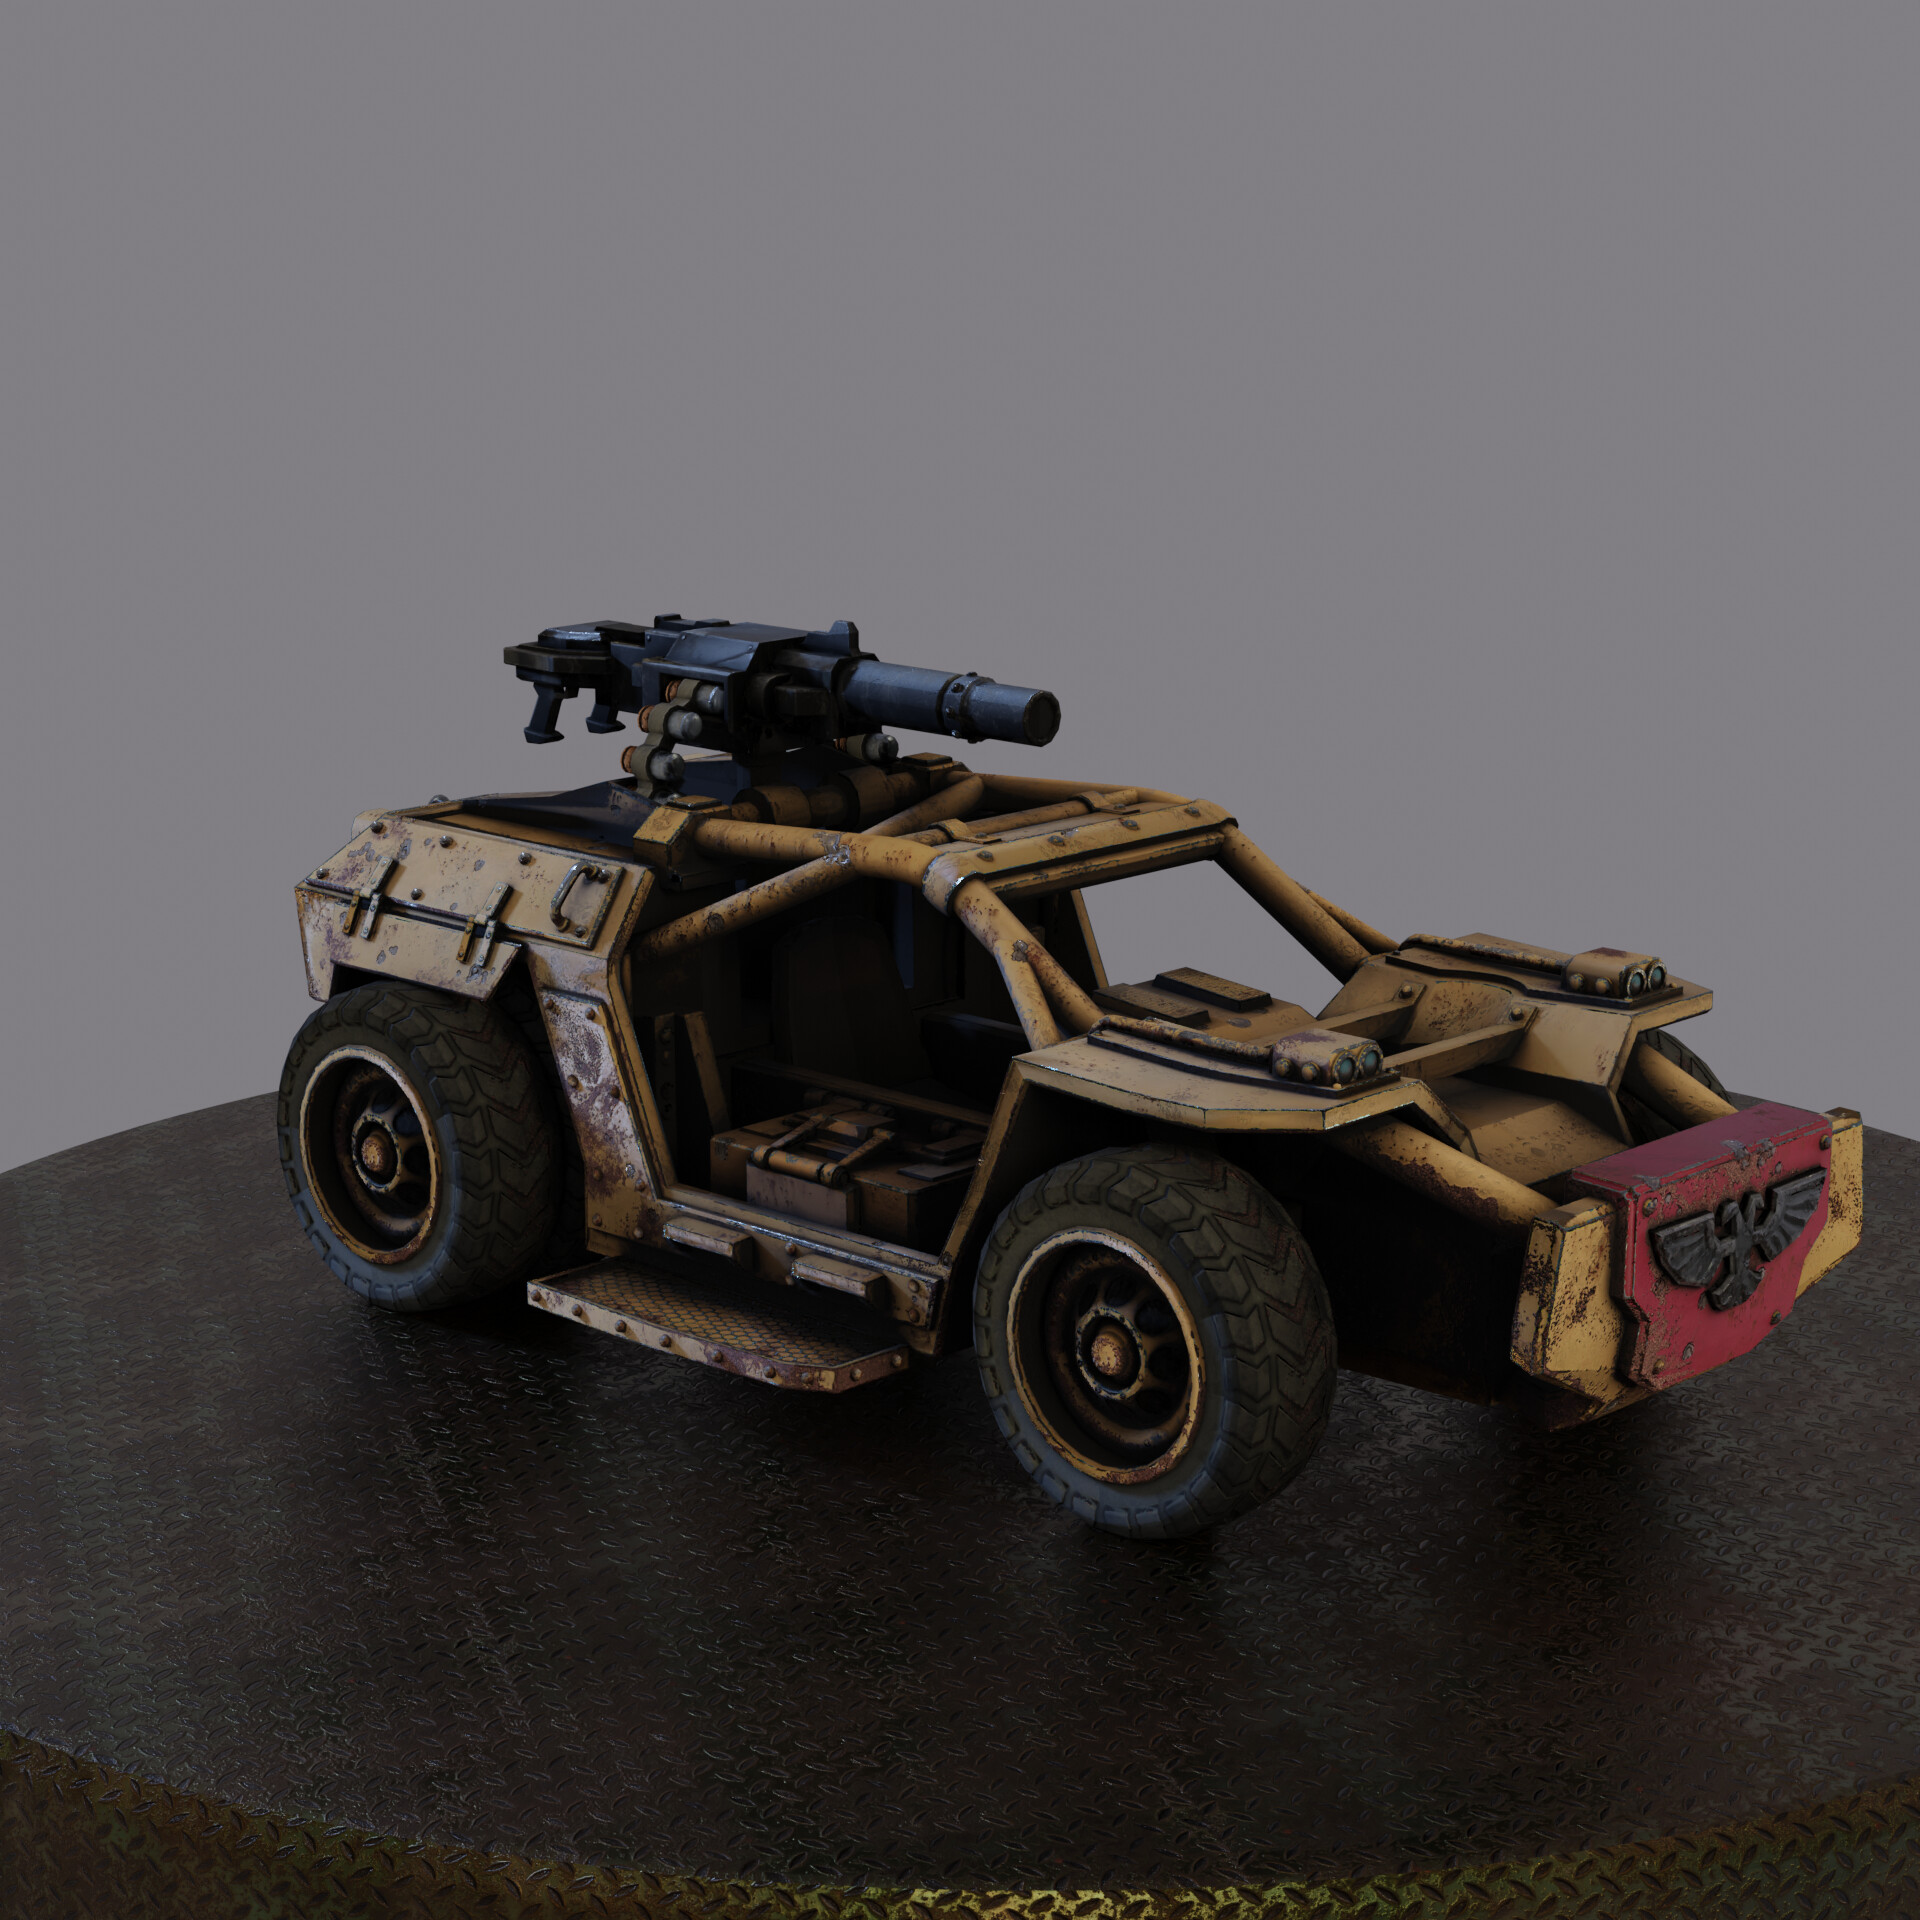 ArtStation - Warhammer Tauros Jeep